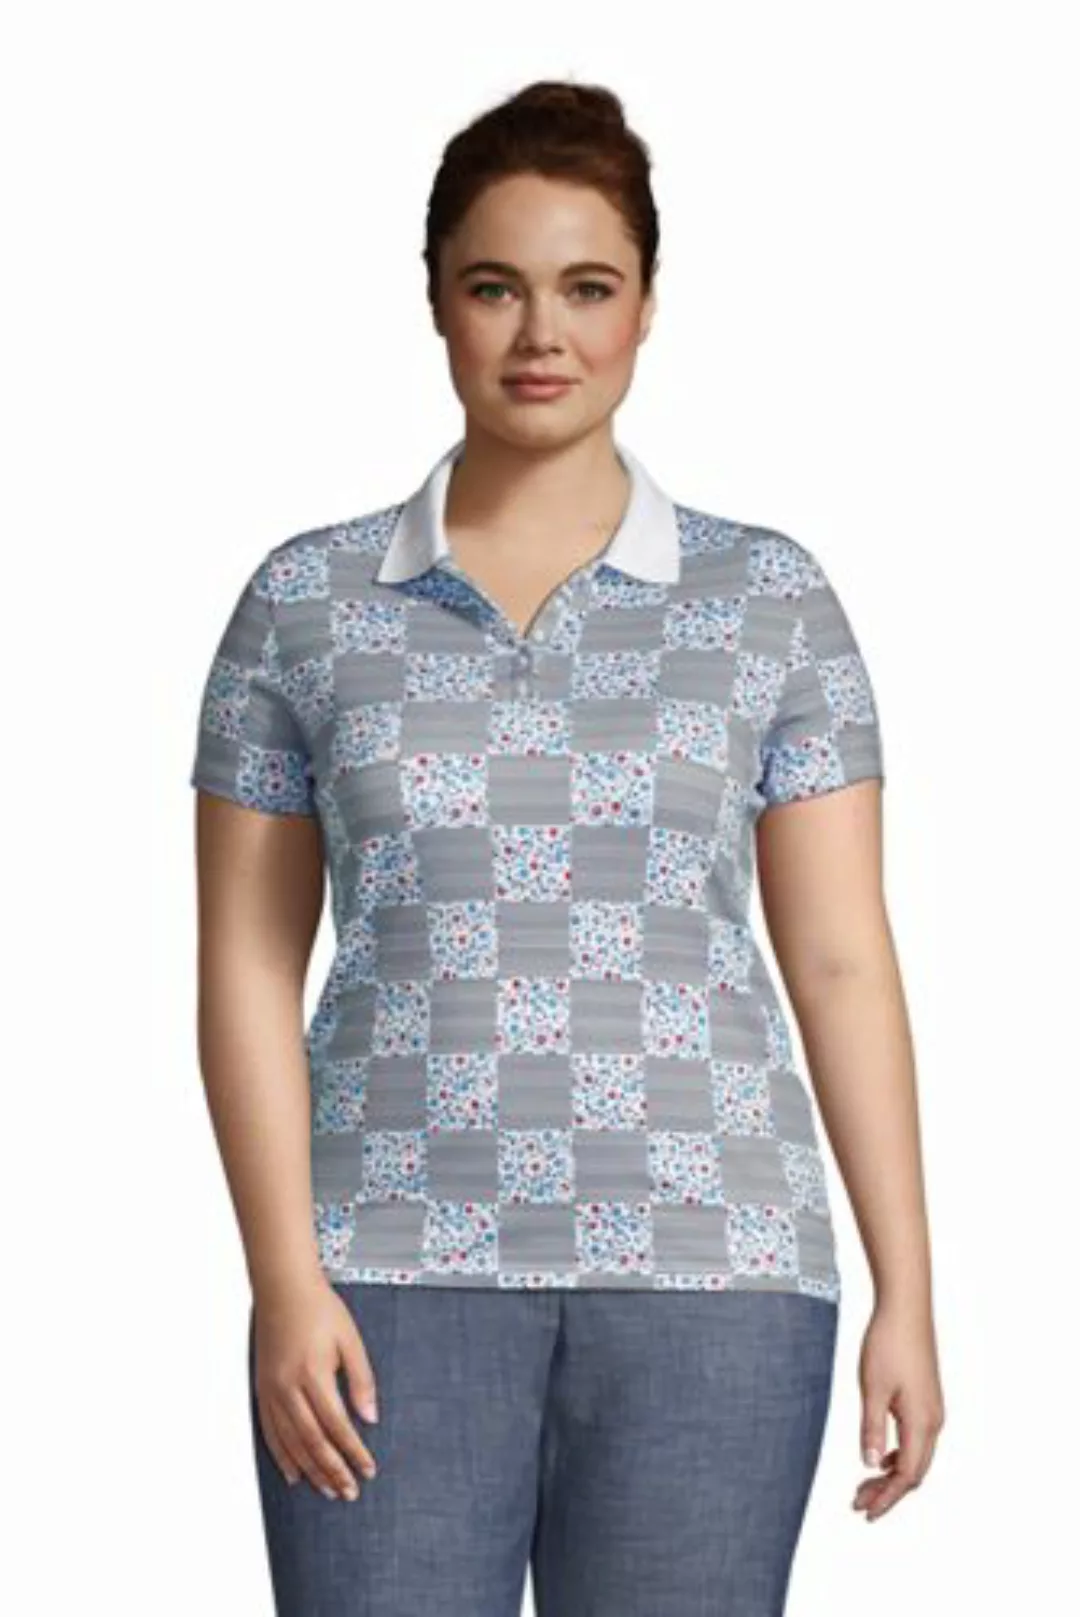 Supima-Poloshirt in großen Größen, Damen, Größe: 56-58 Plusgrößen, Weiß, Ba günstig online kaufen